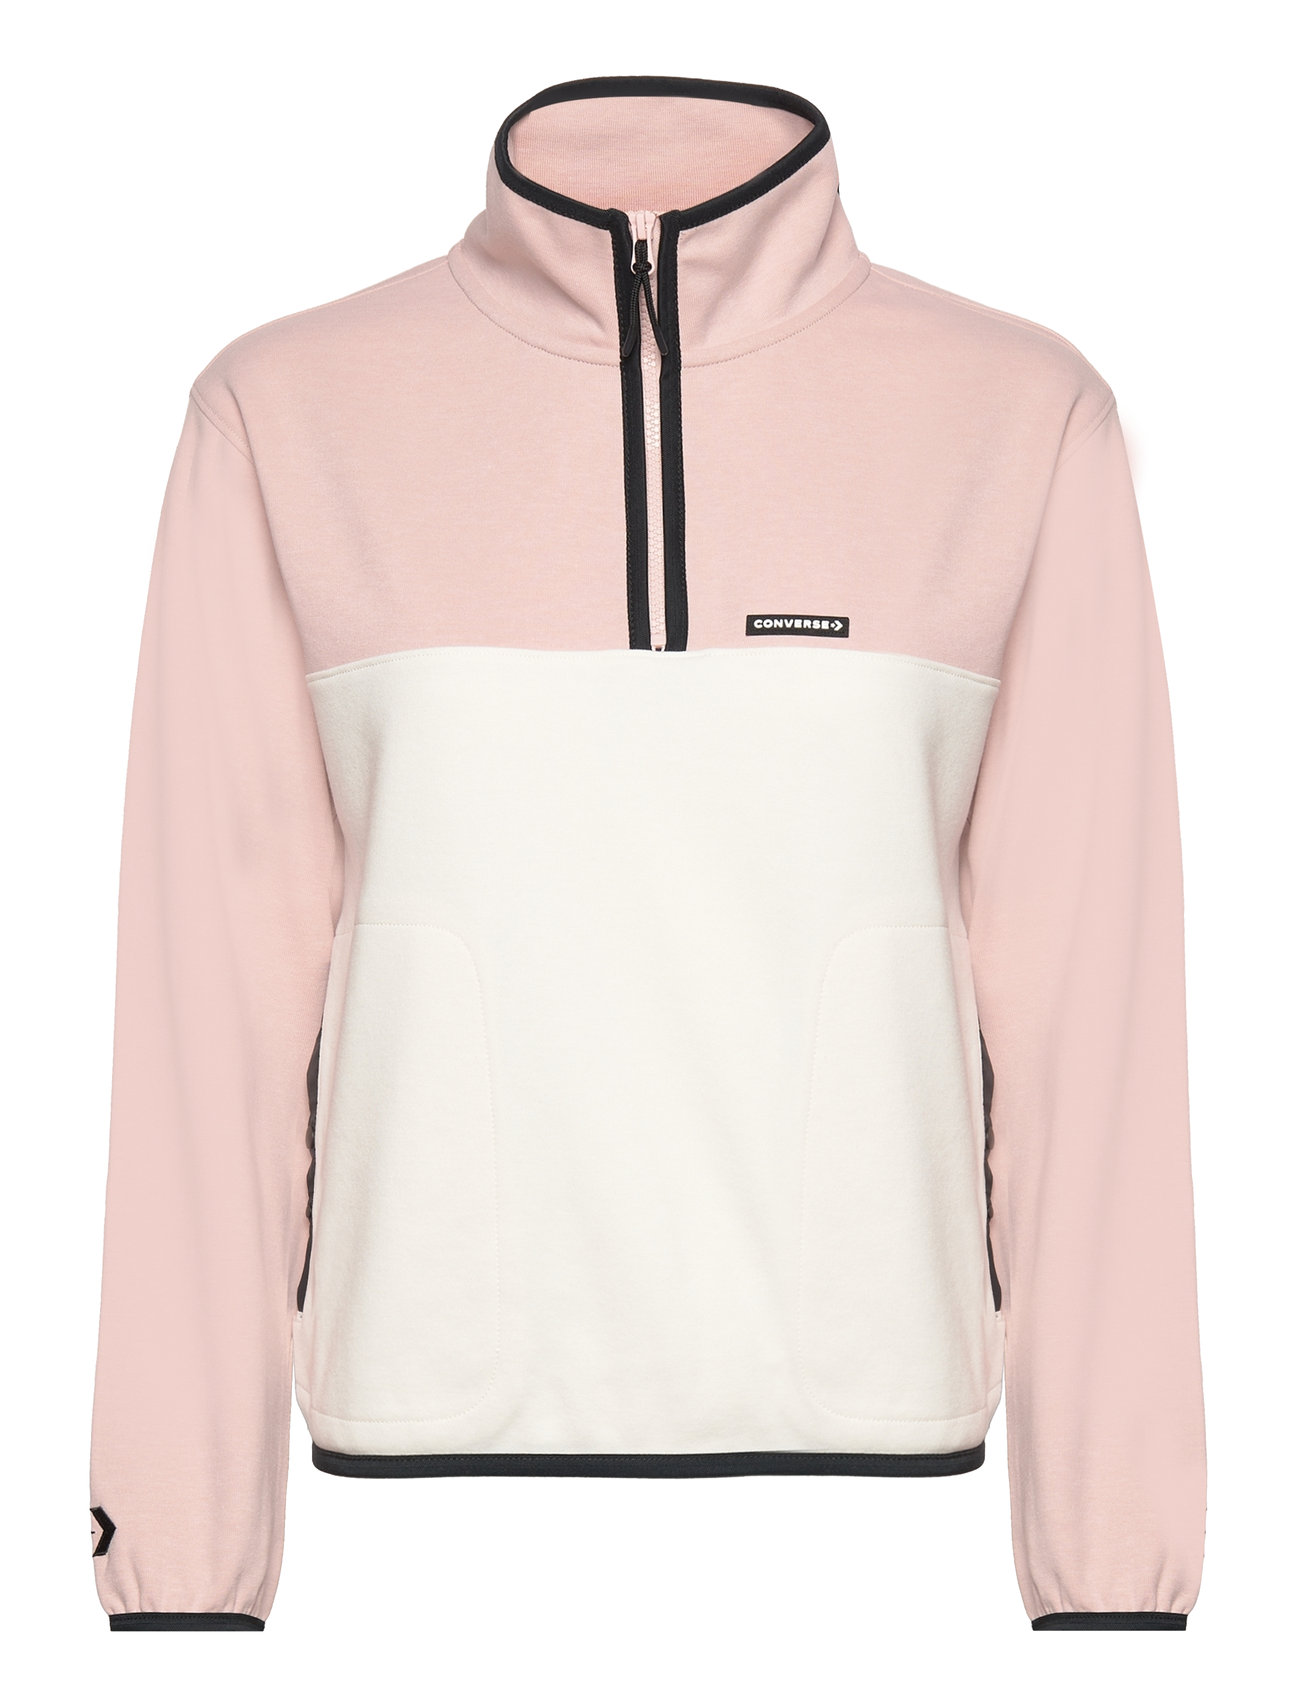 Popover 1/2 Zip Top Sport Sweat-shirts & Hoodies Fleeces & Midlayers Pink Converse